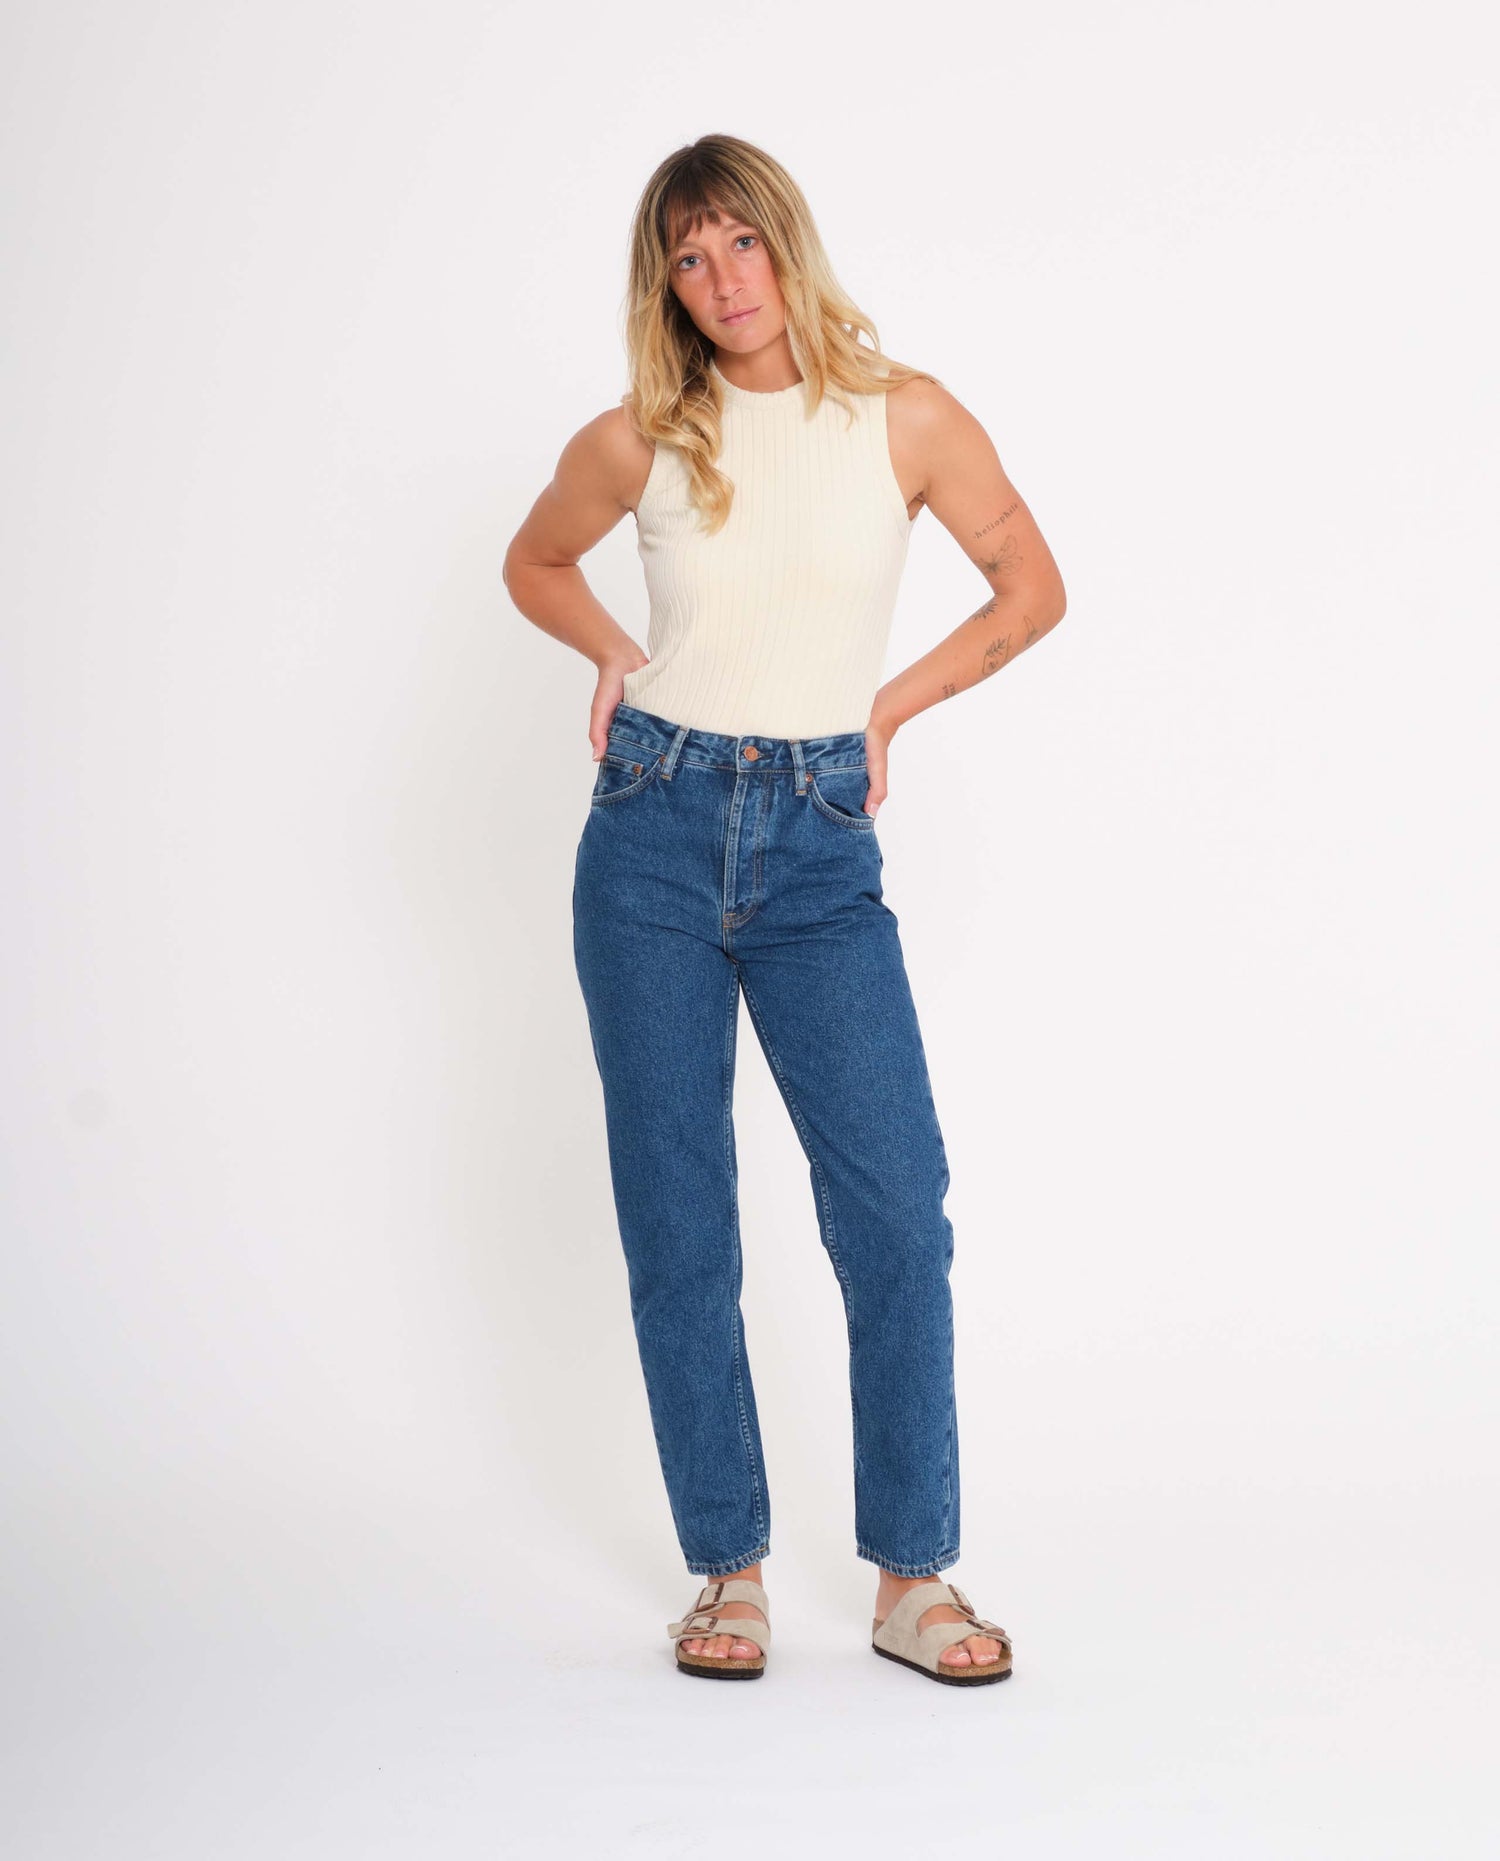 marché commun nudie jeans femme jean coton biologique breezy britt 90s stone bleu coton biologique